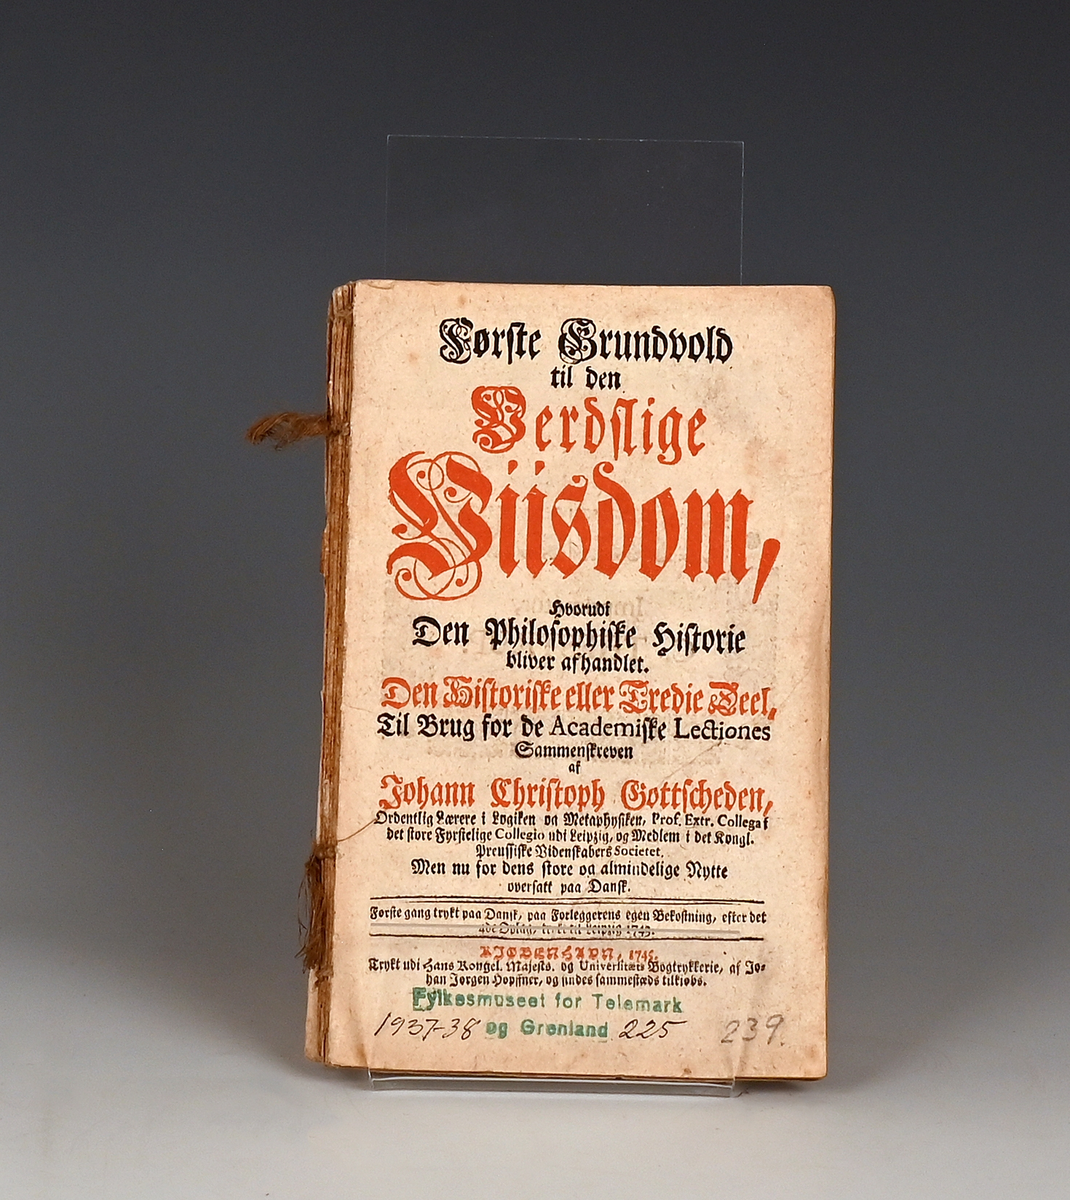 Prot: Gottscheden, Johann Christoph, Første Grundvold til den Verdslige Visdom. Kbhv. 1745. 120 s. 8 F. (Avrivi bd)